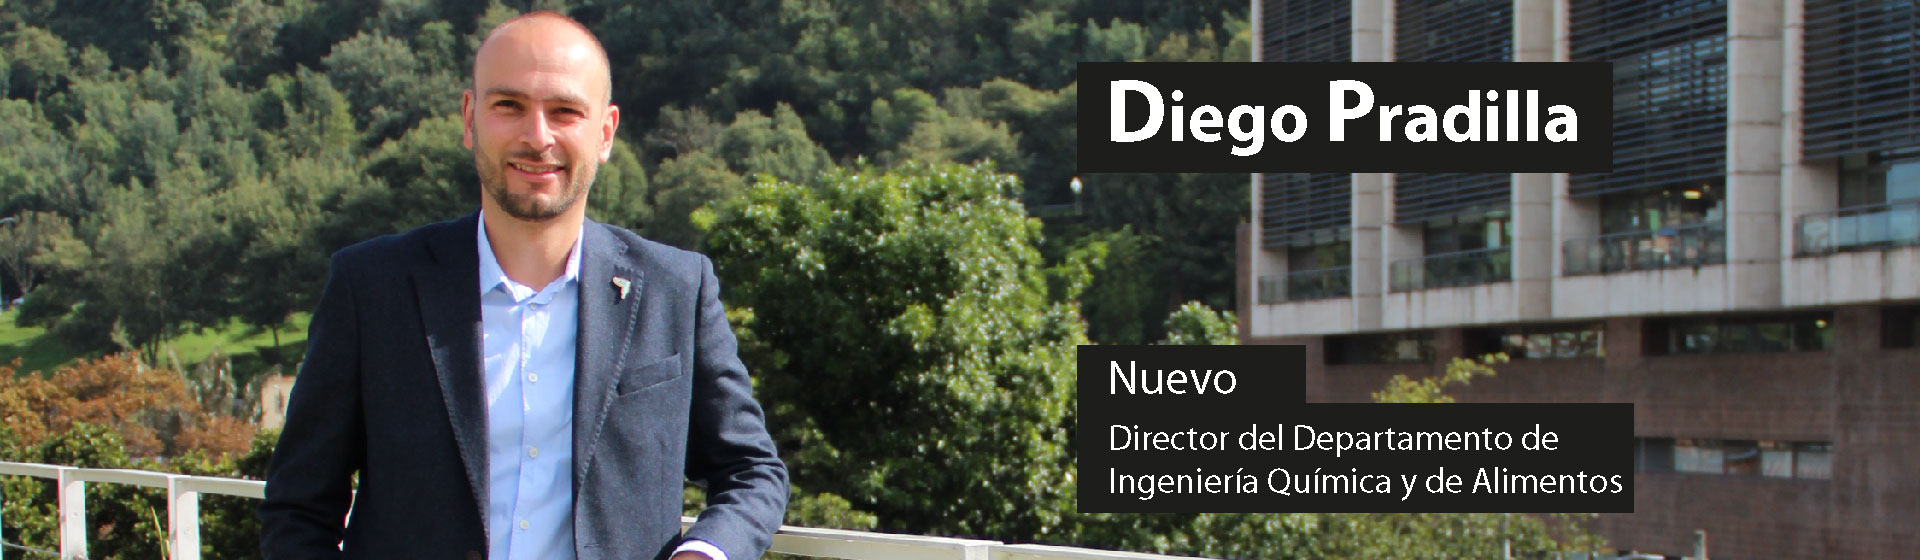 Nuevo Director de Departamento de Ingeniería Química y Alimentos Uniandes - Profesor Diego Pradilla